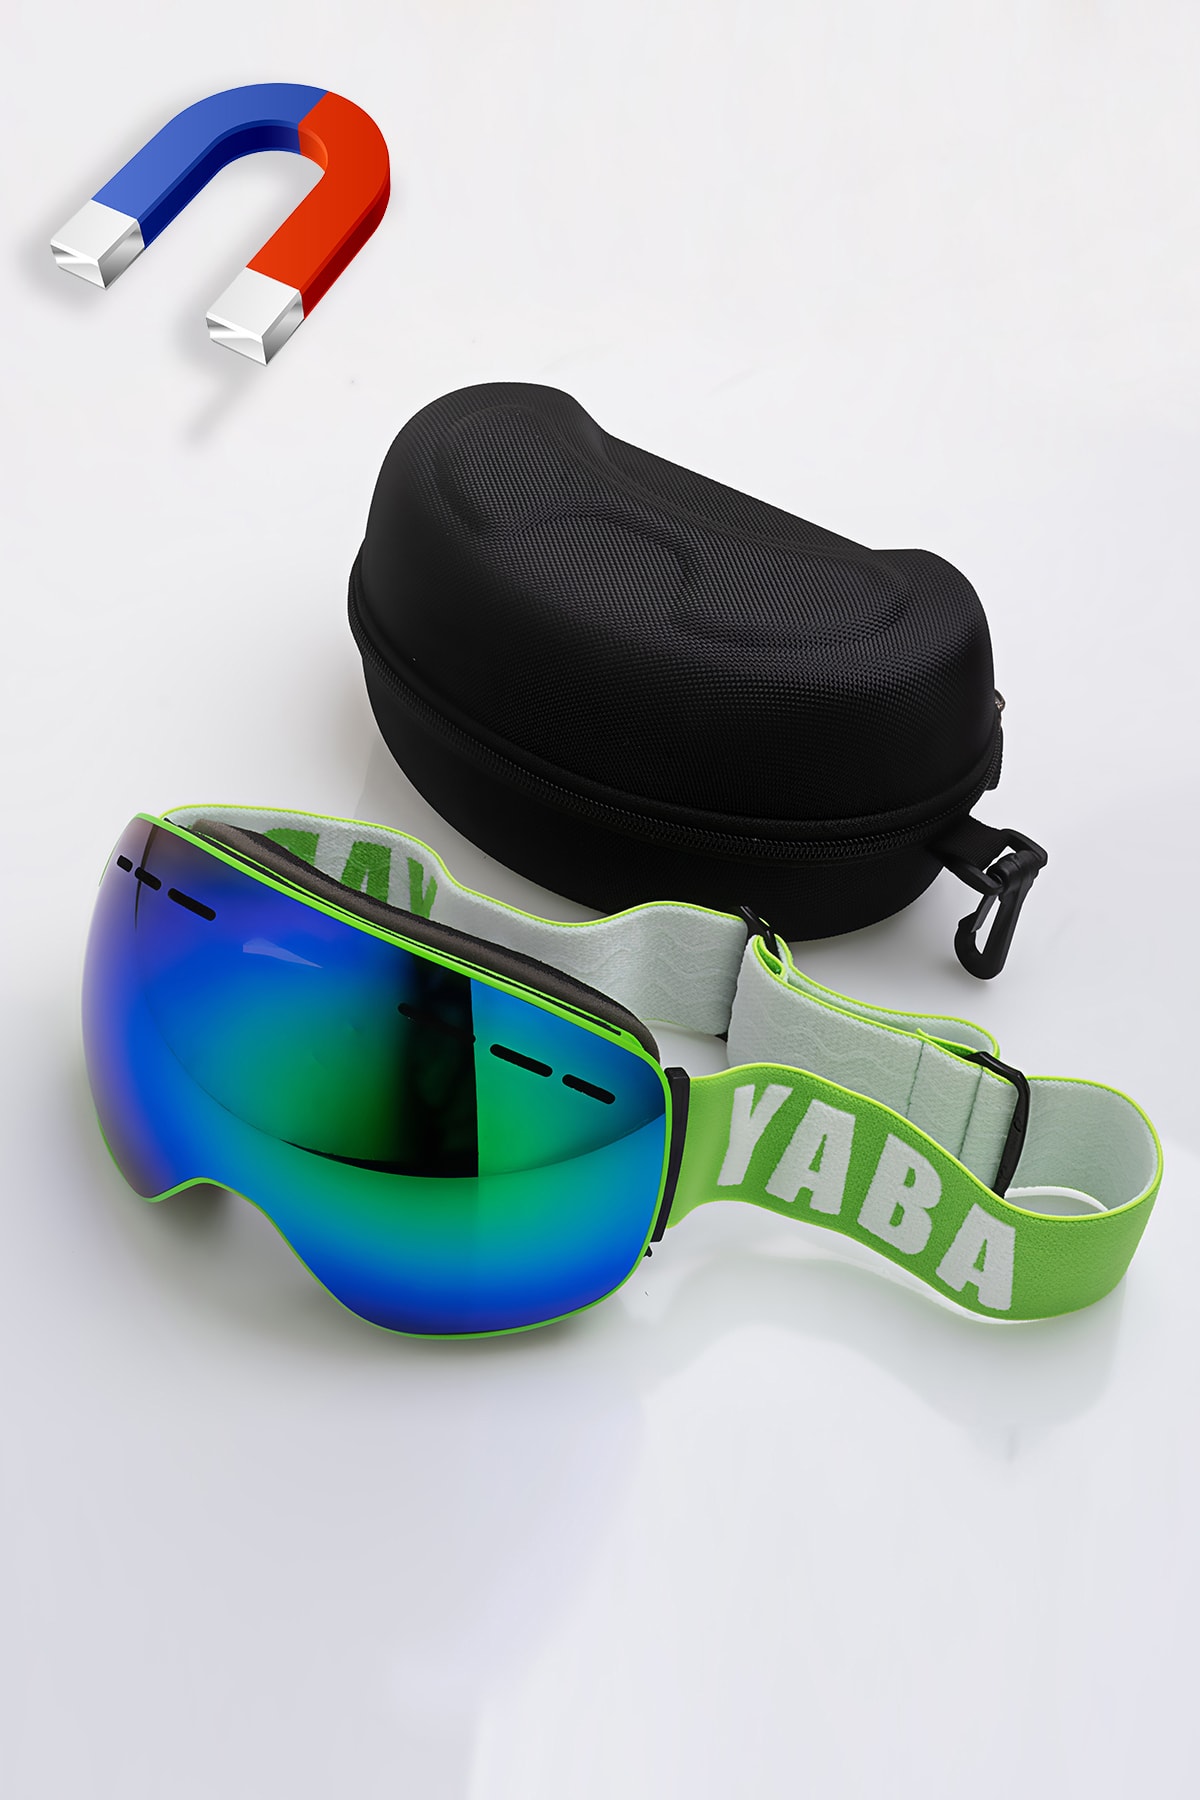 Manyetik Kayak Gözlüğü - Goggle